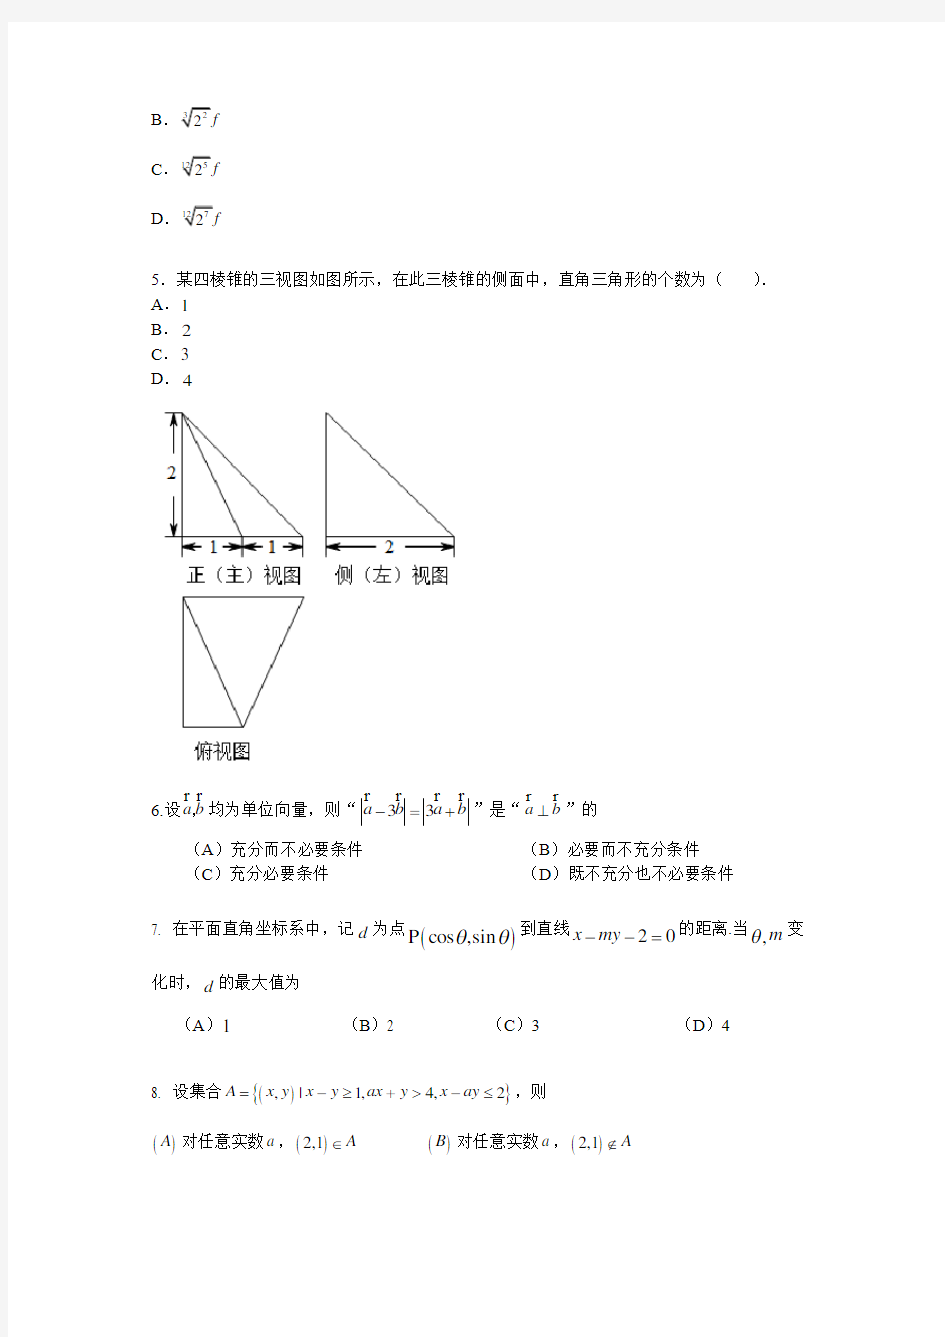 【真题】2018年北京市高考数学(理)试题含答案解析